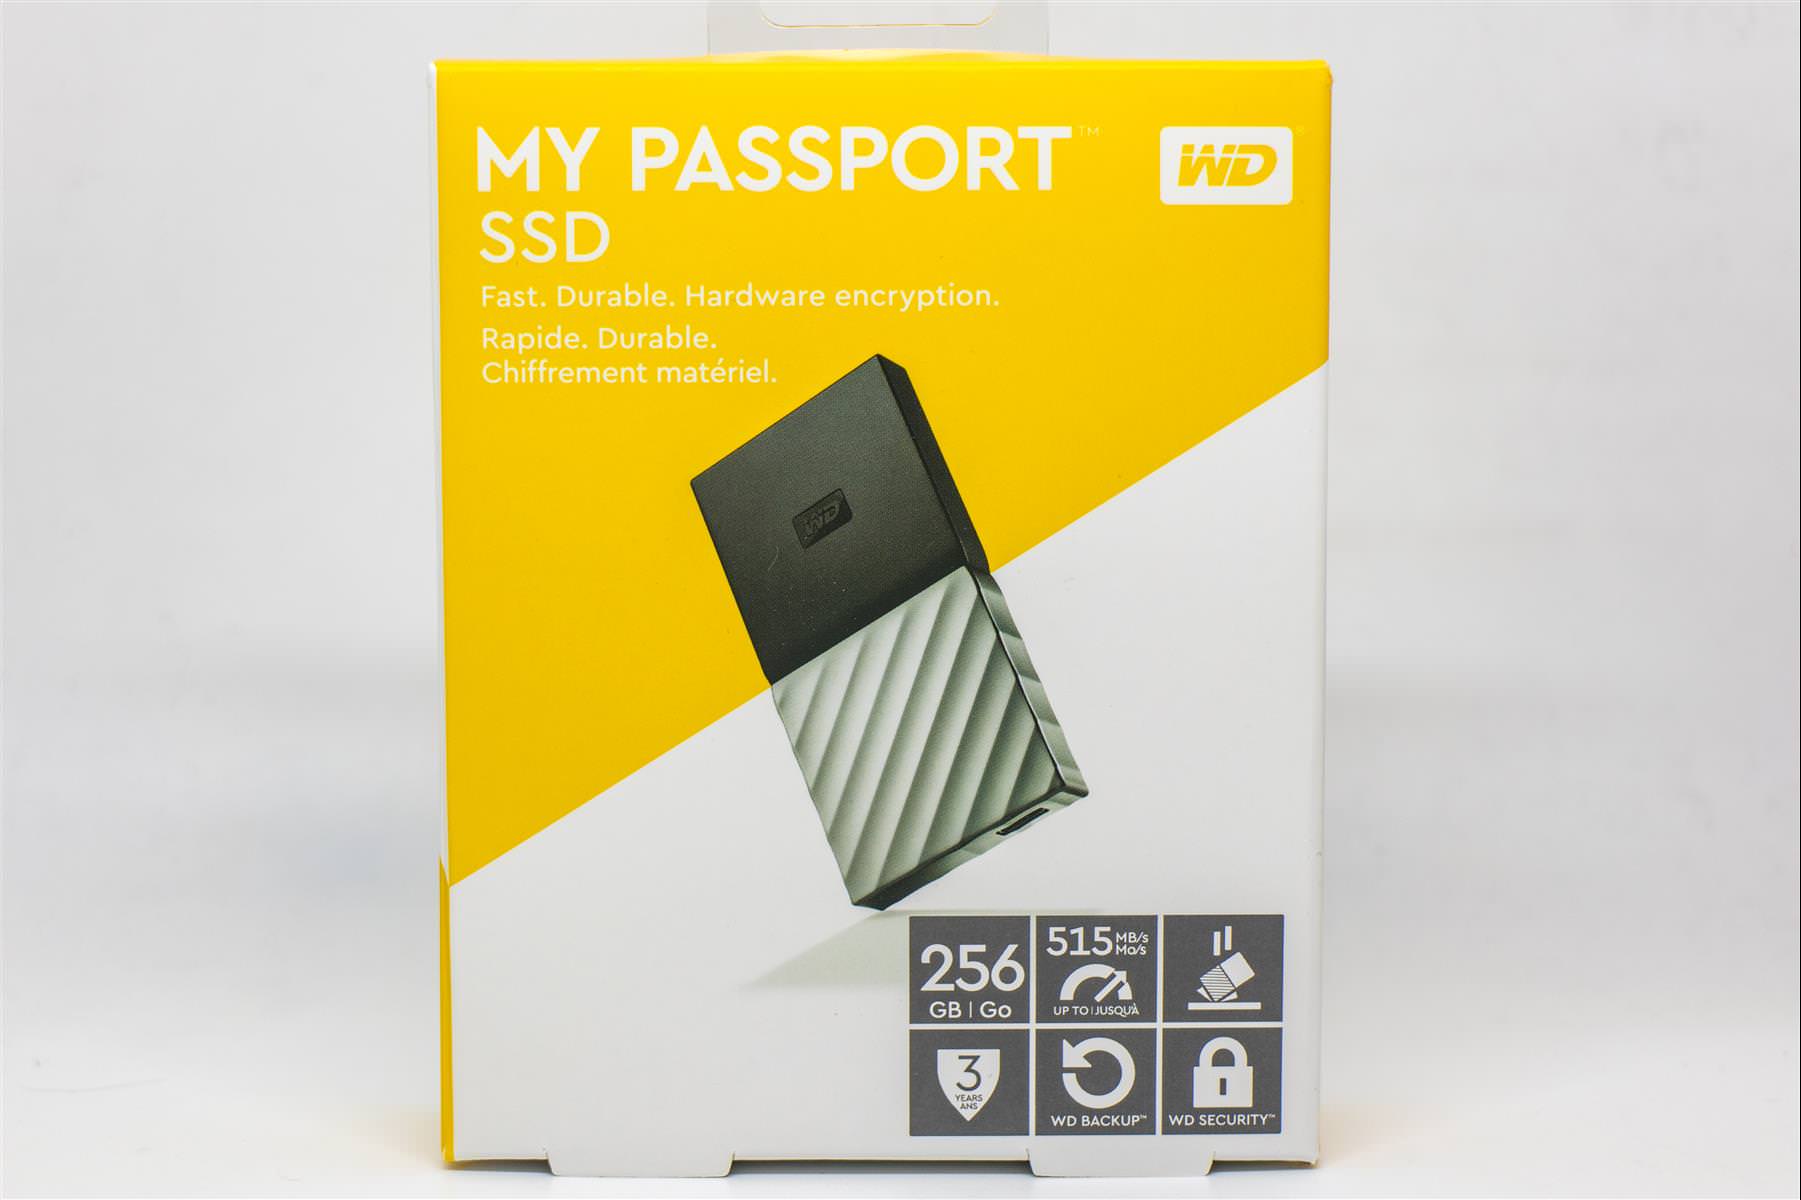 WD MyPassport SSD